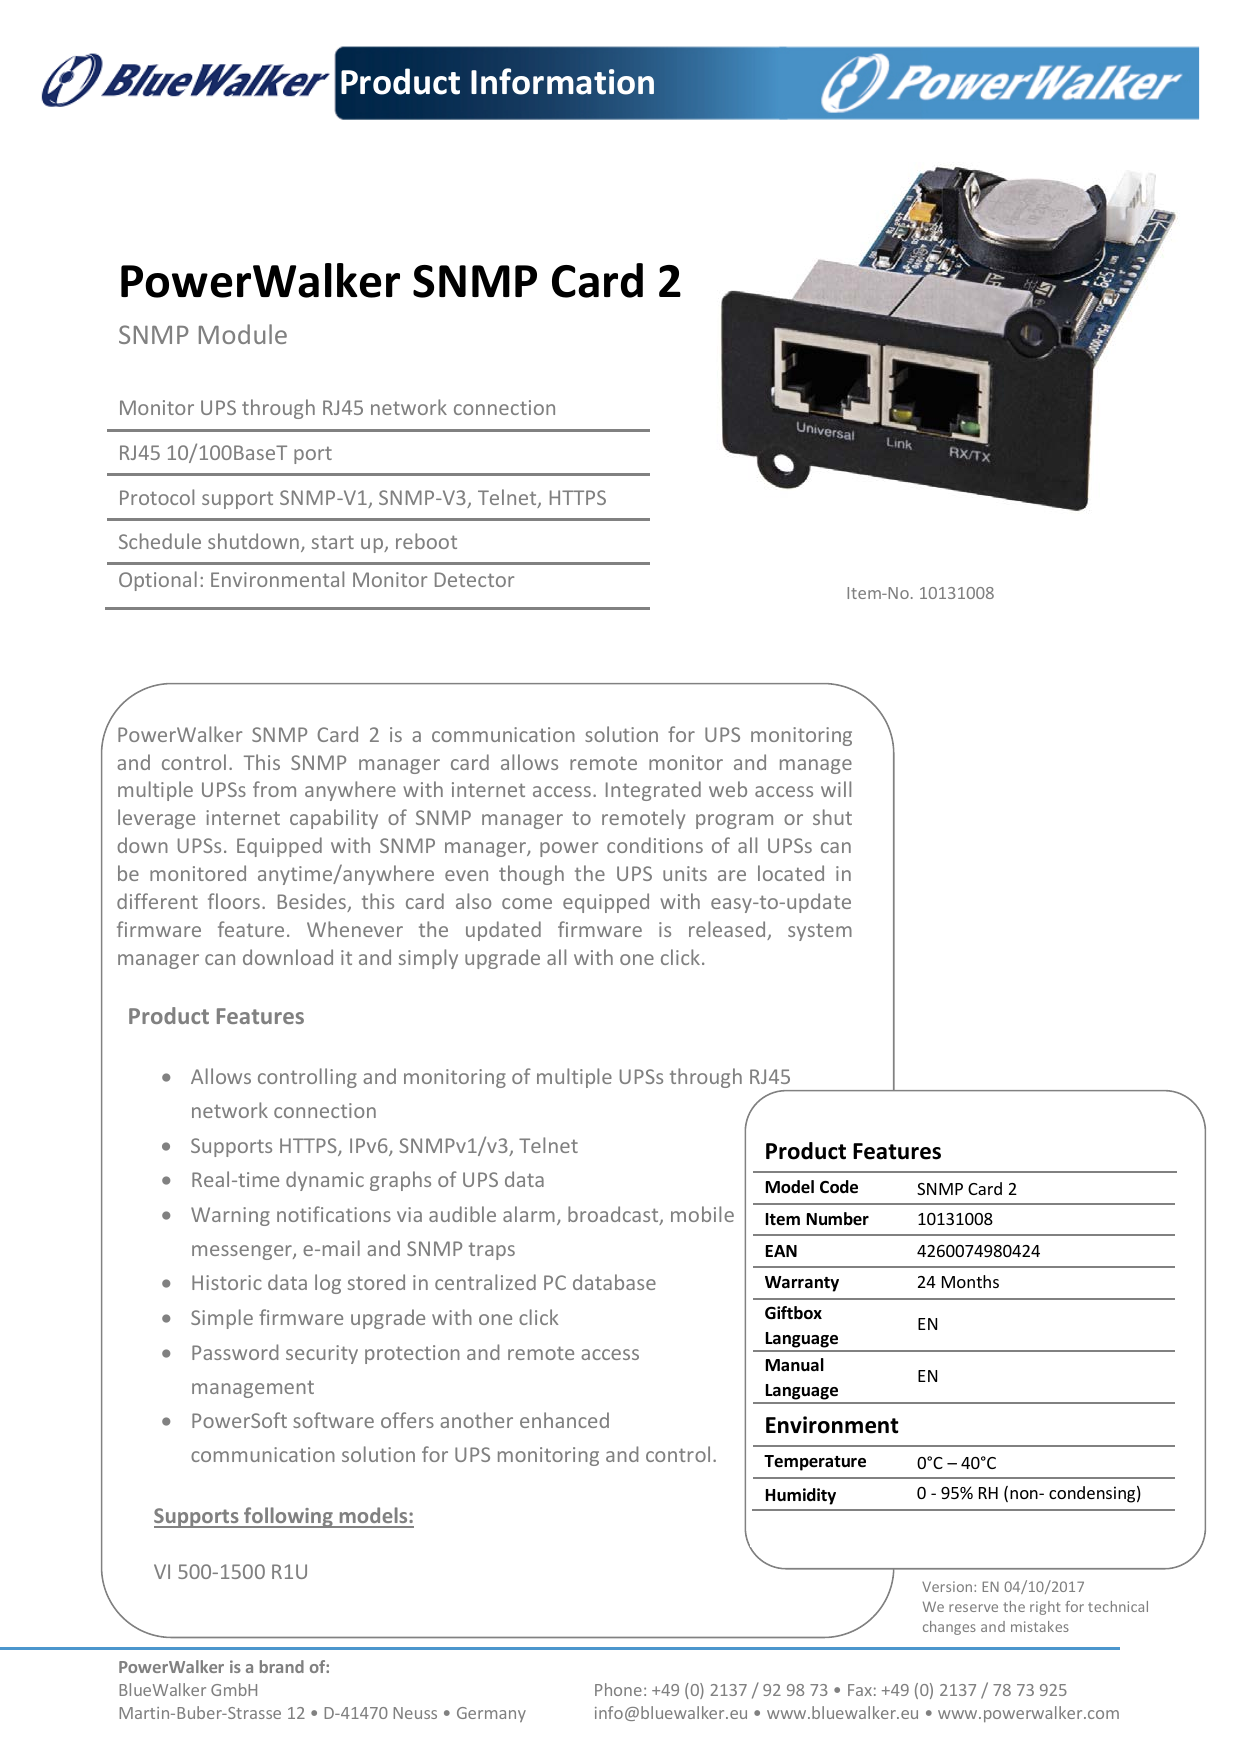 PowerWalker BlueWalker SNMP Card 2 